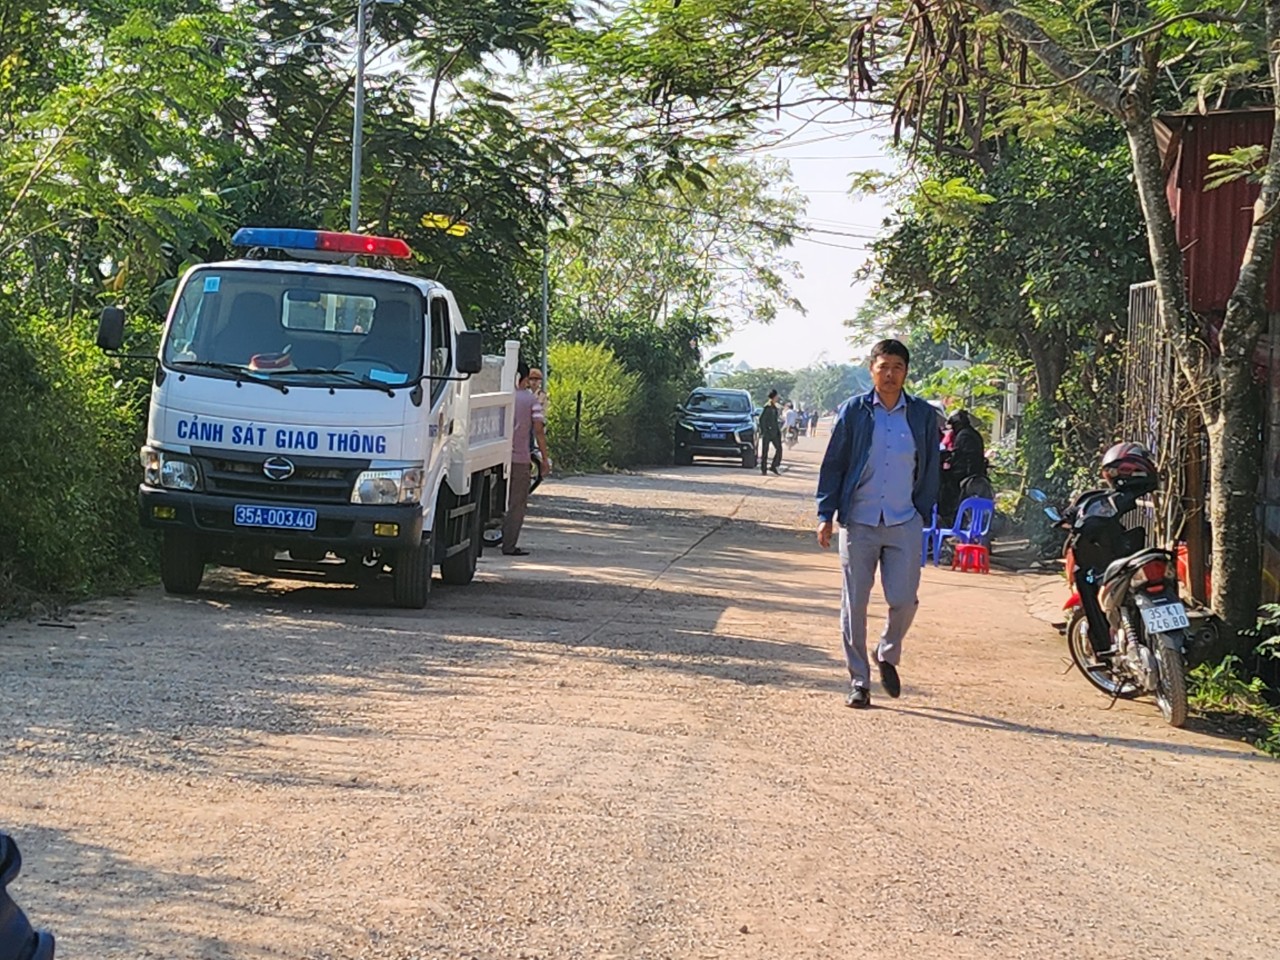 Nơi xảy ra vụ việc là ngôi nhà nằm cạnh đường đê và con sông, phía bên kia thuộc địa phận tỉnh Thanh Hóa. Các con đường đi qua đều được cảnh sát canh gác để đảm bảo cho công tác khám nghiệm.